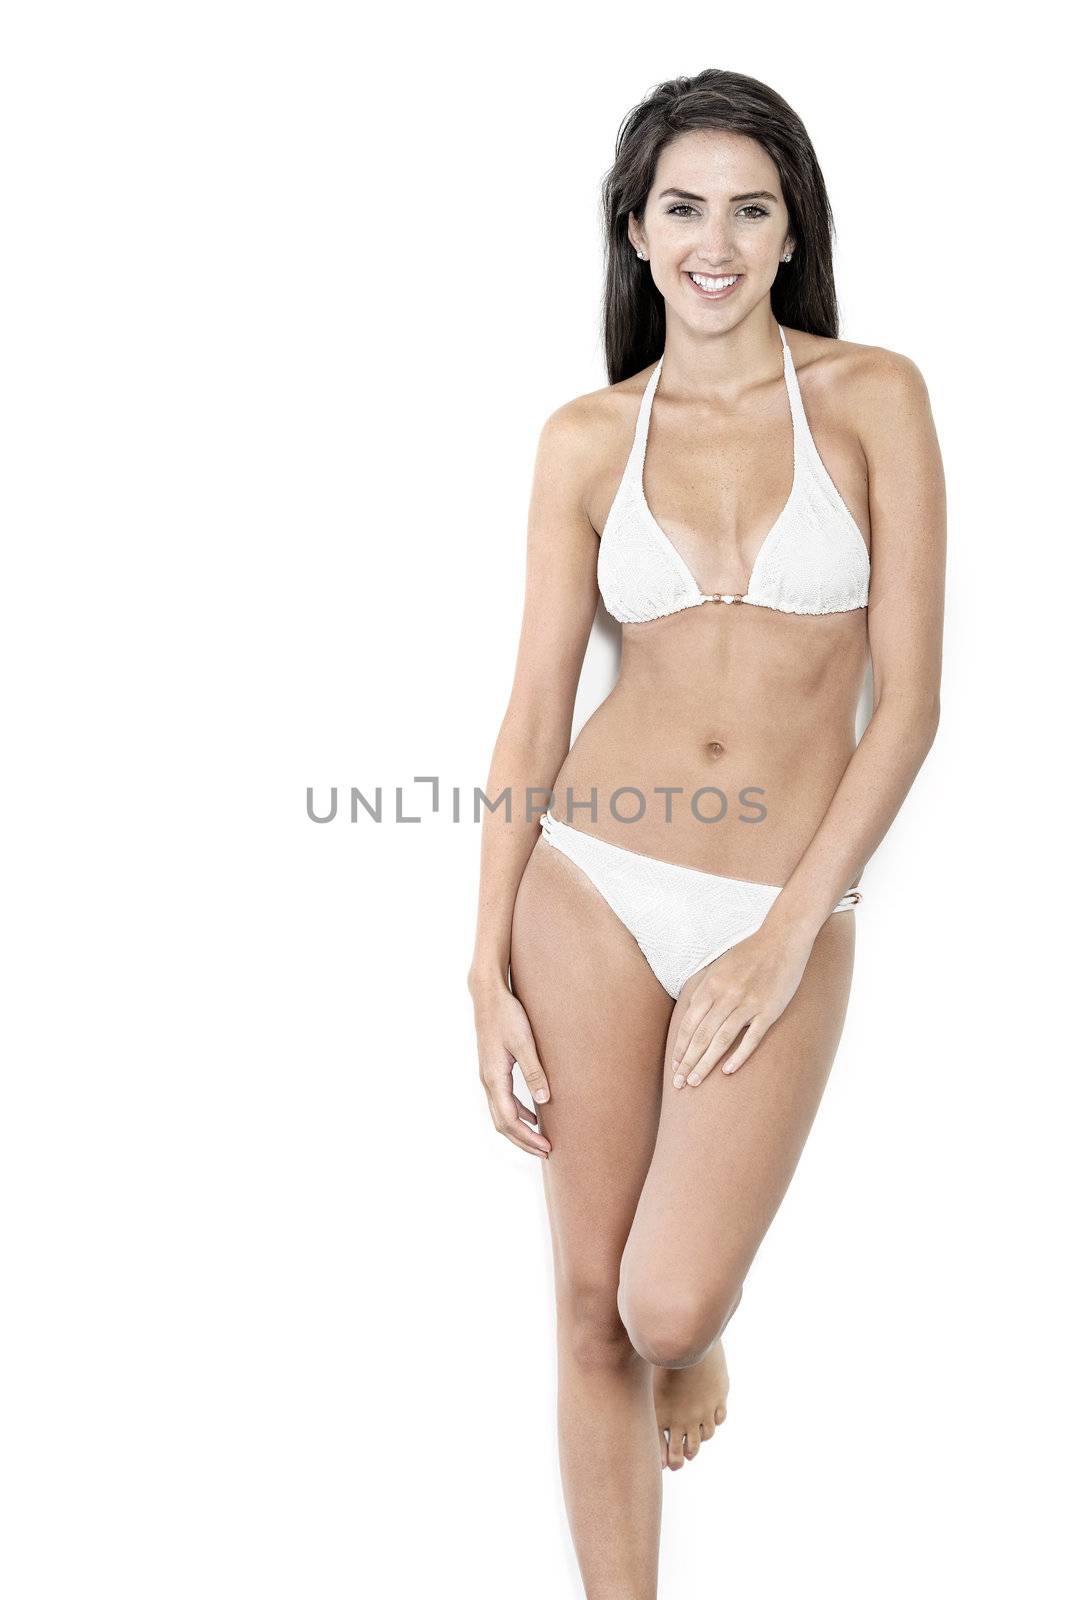 Woman in bikini smiling by studiofi